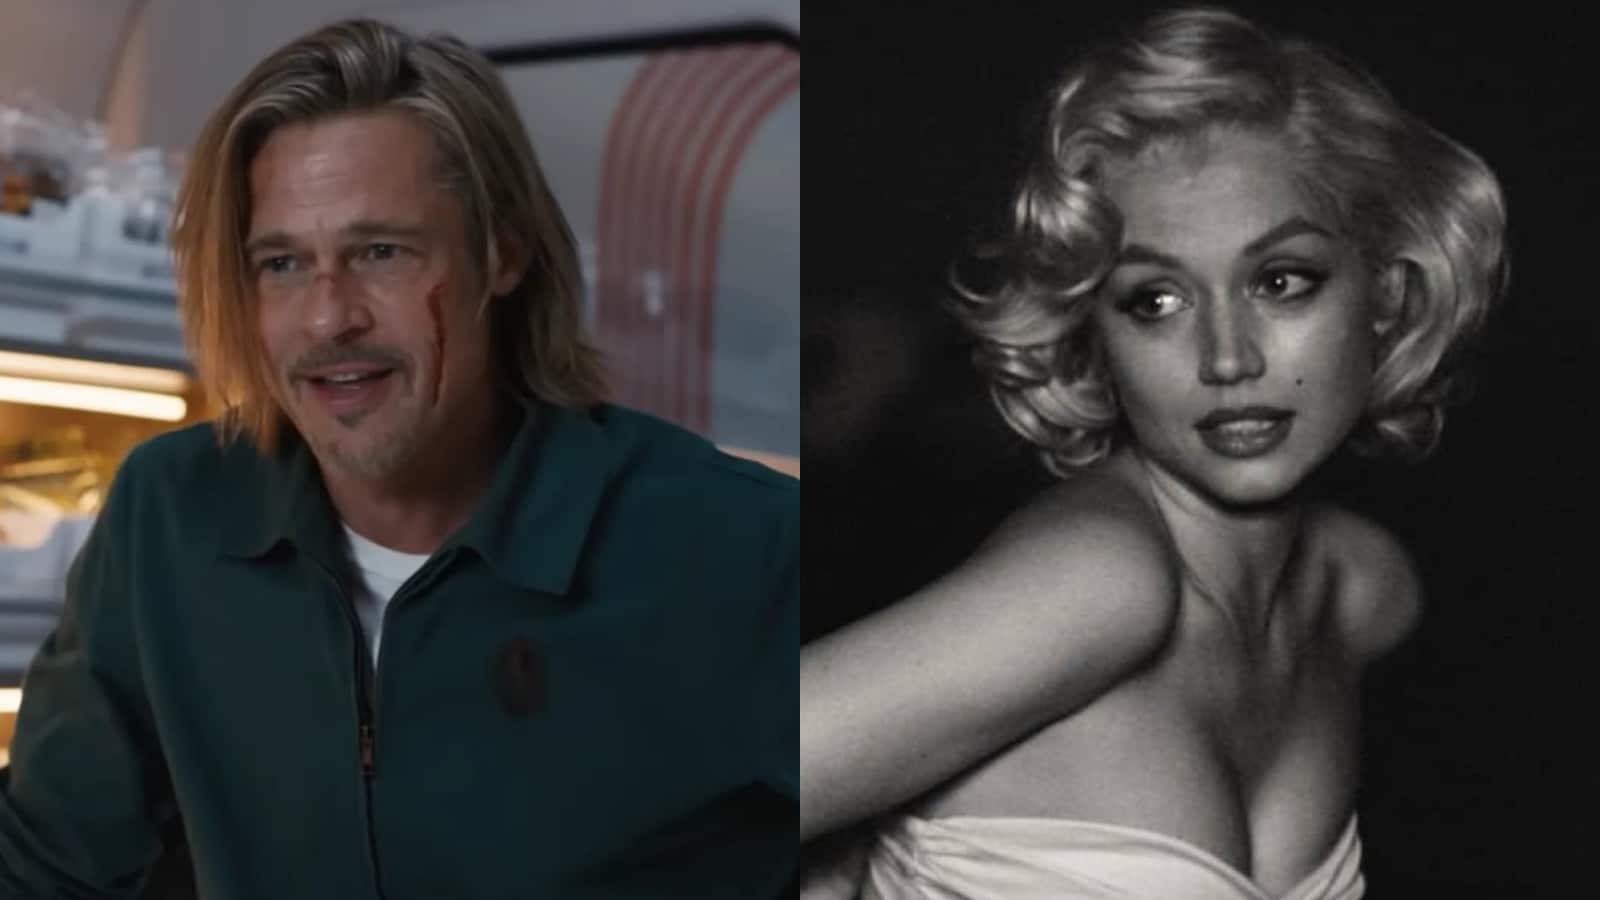 Ana de Armas defends Marilyn Monroe depiction in Blonde